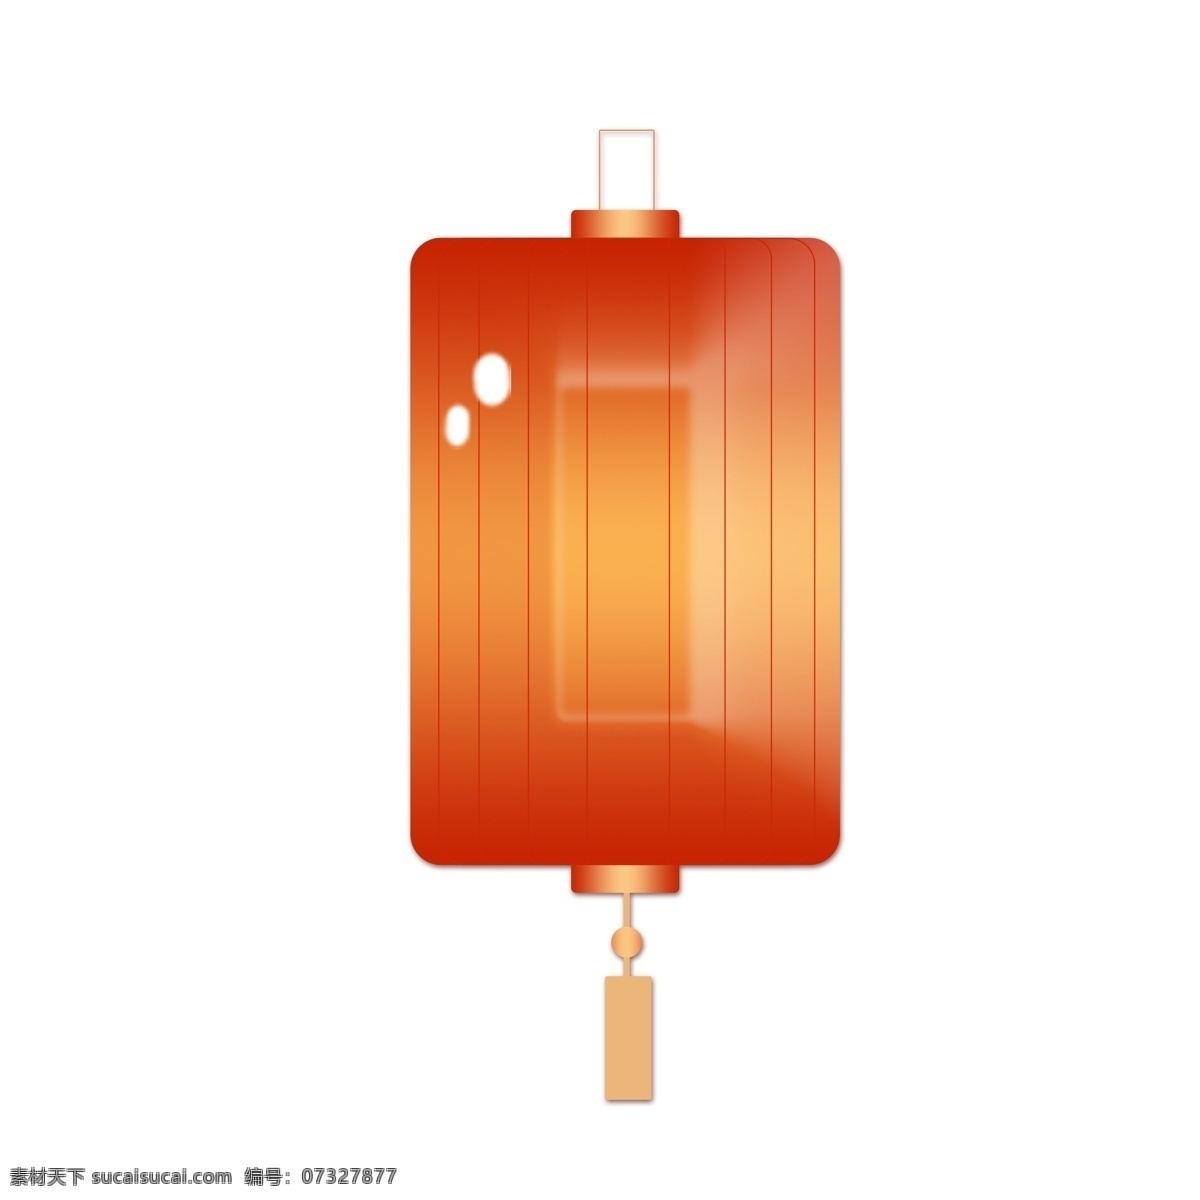 中国 风 新年 灯笼 透明 手绘 红色灯笼 灯笼png 节日元素 春节元素 免扣素材